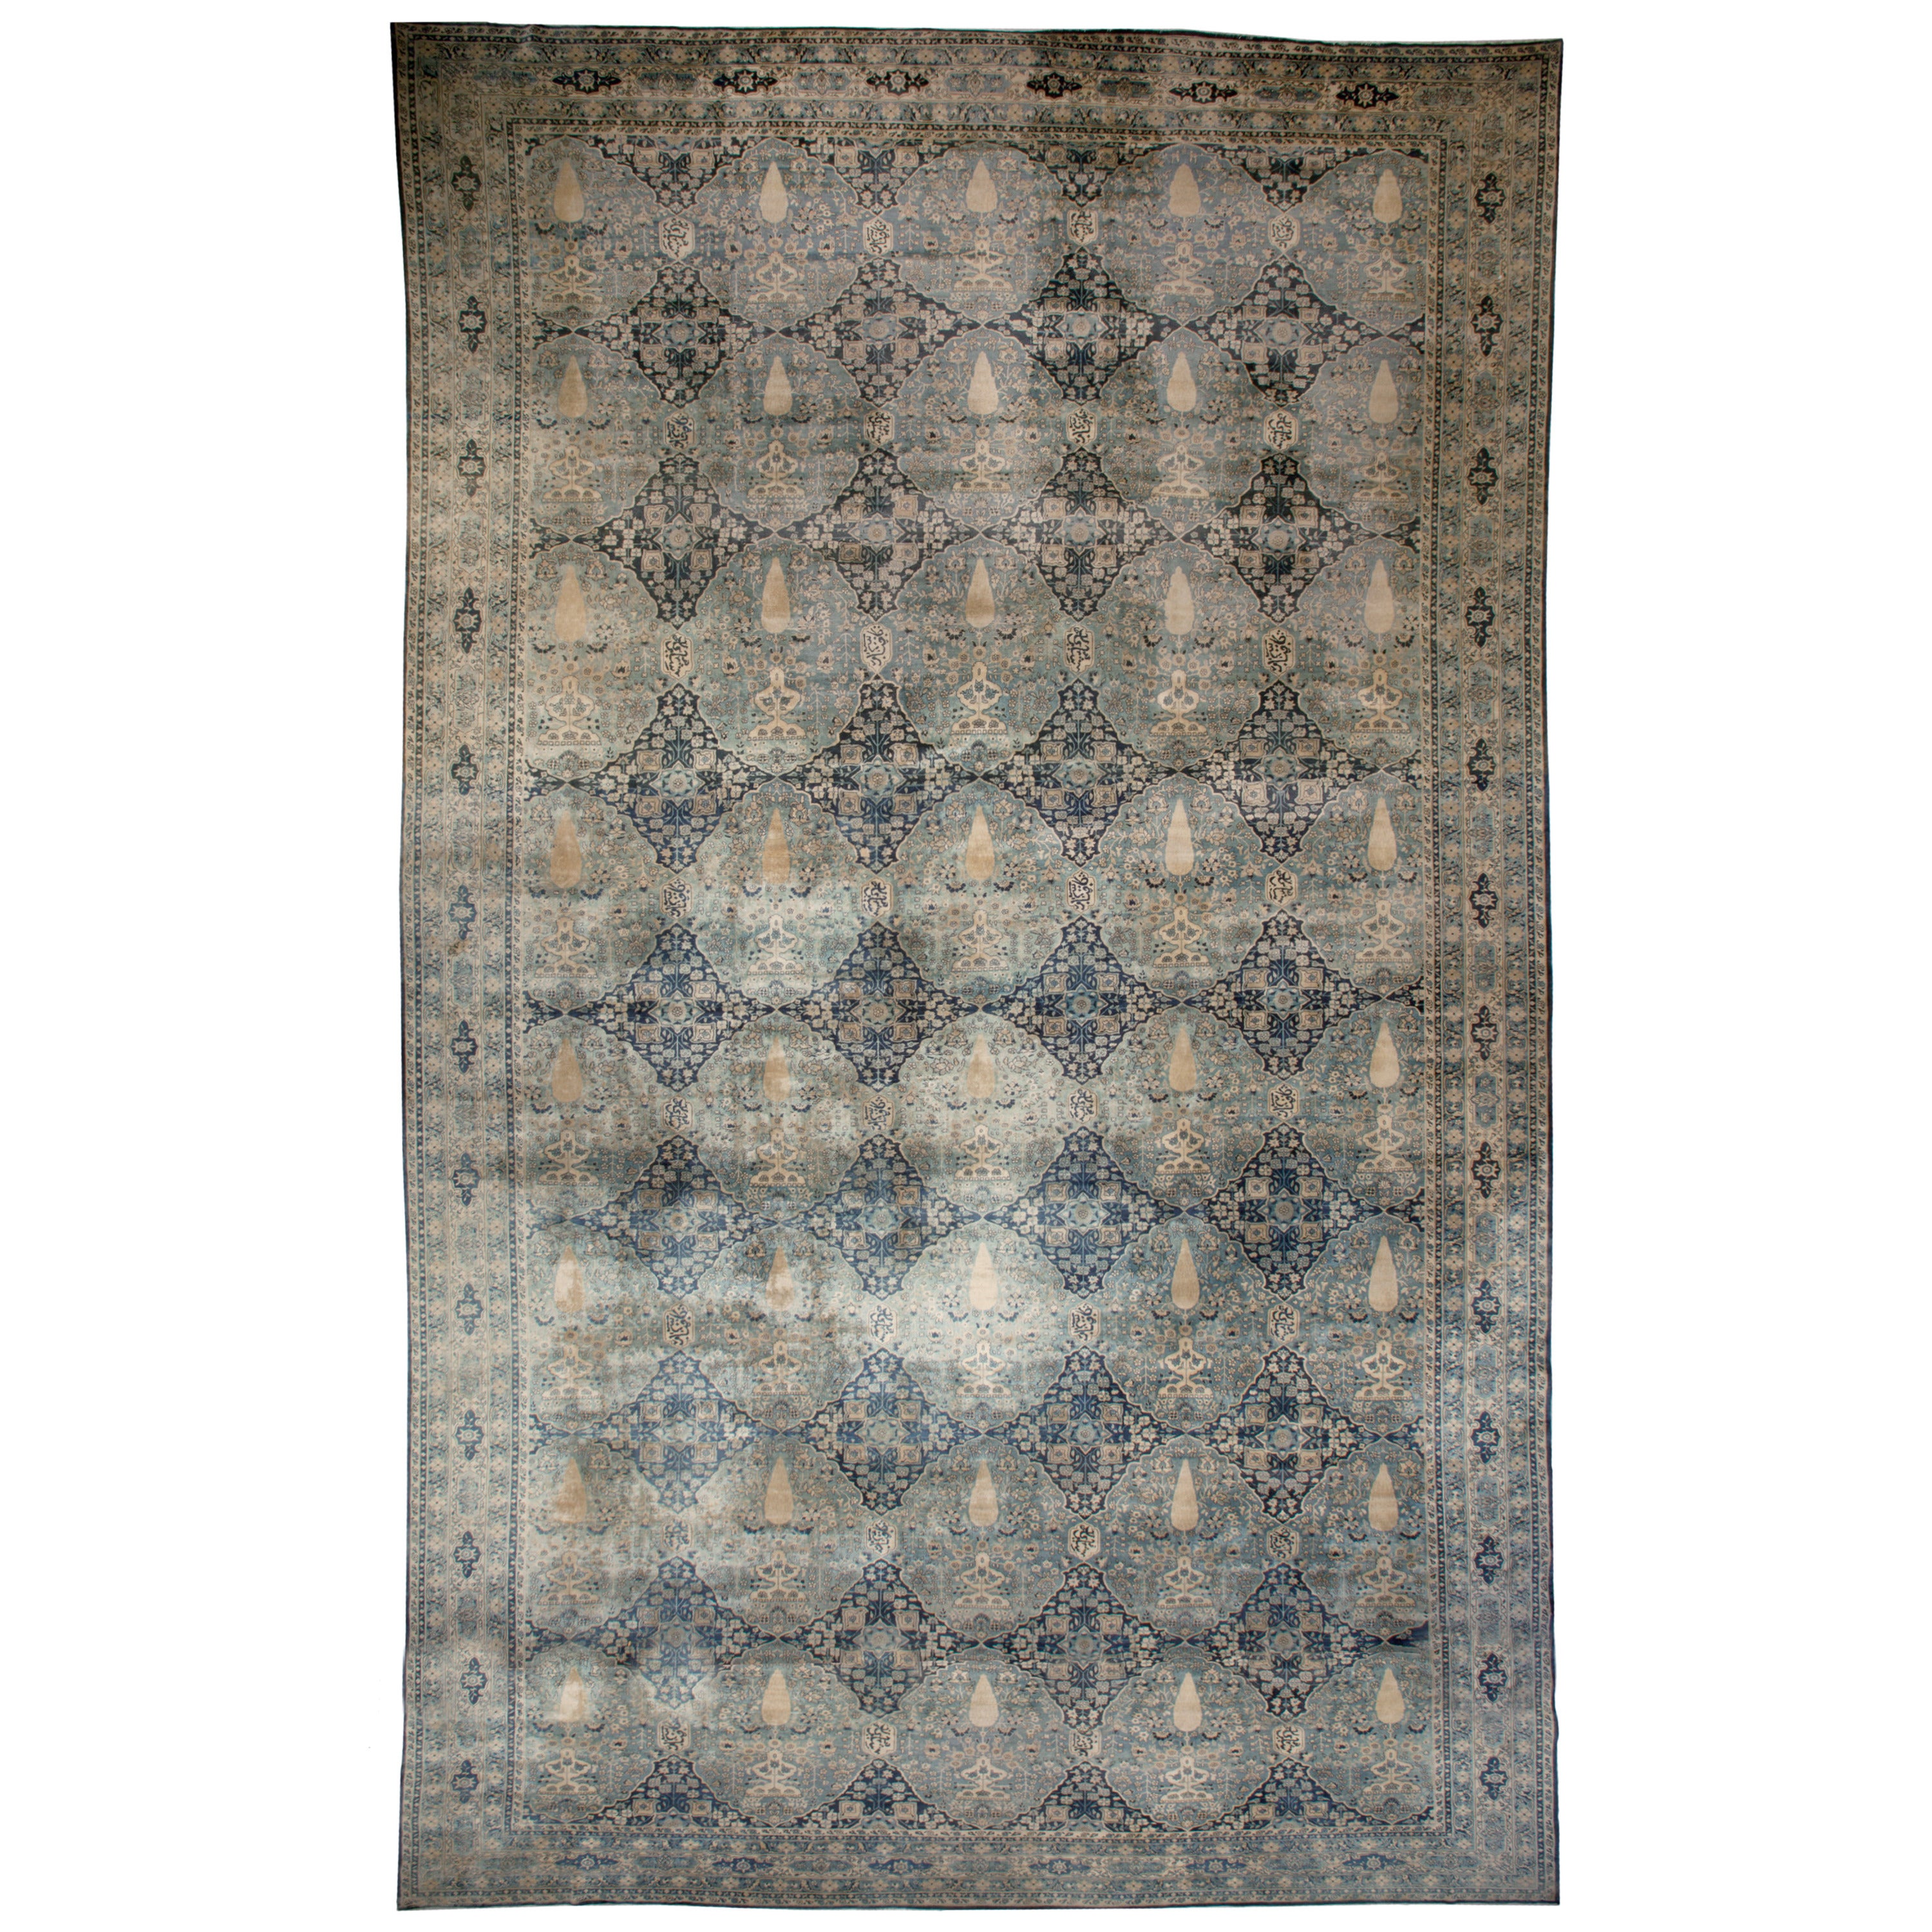 Oversized Antique Indian Botanic Handmade Wool Rug